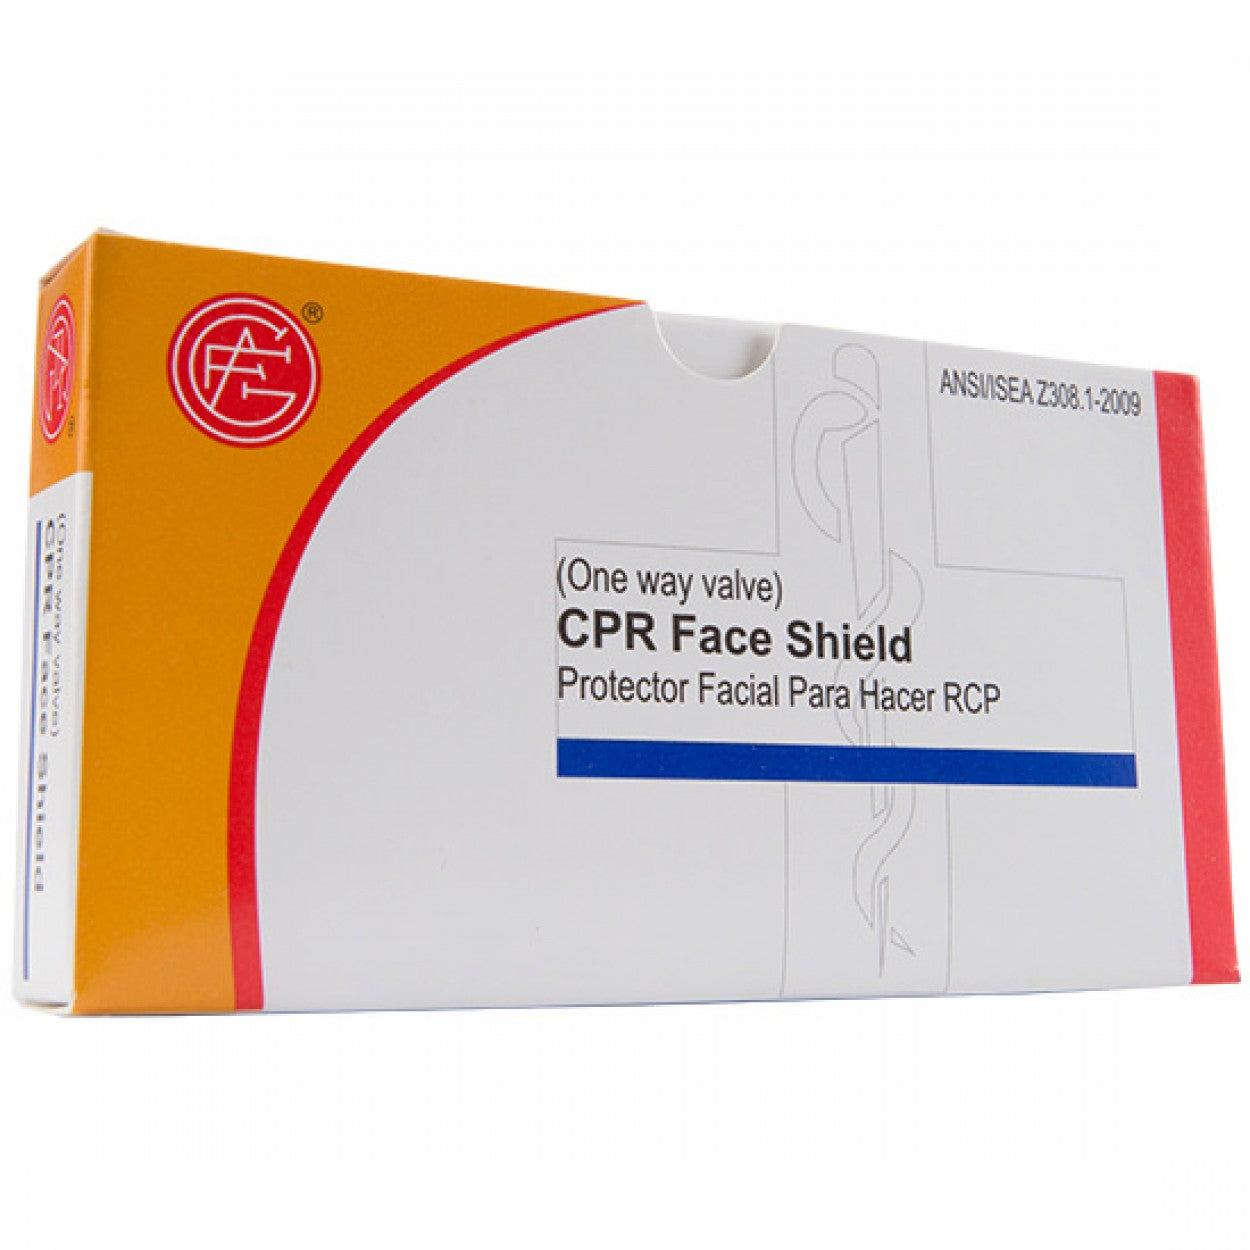 CPR Face Shield, 1 pc per box